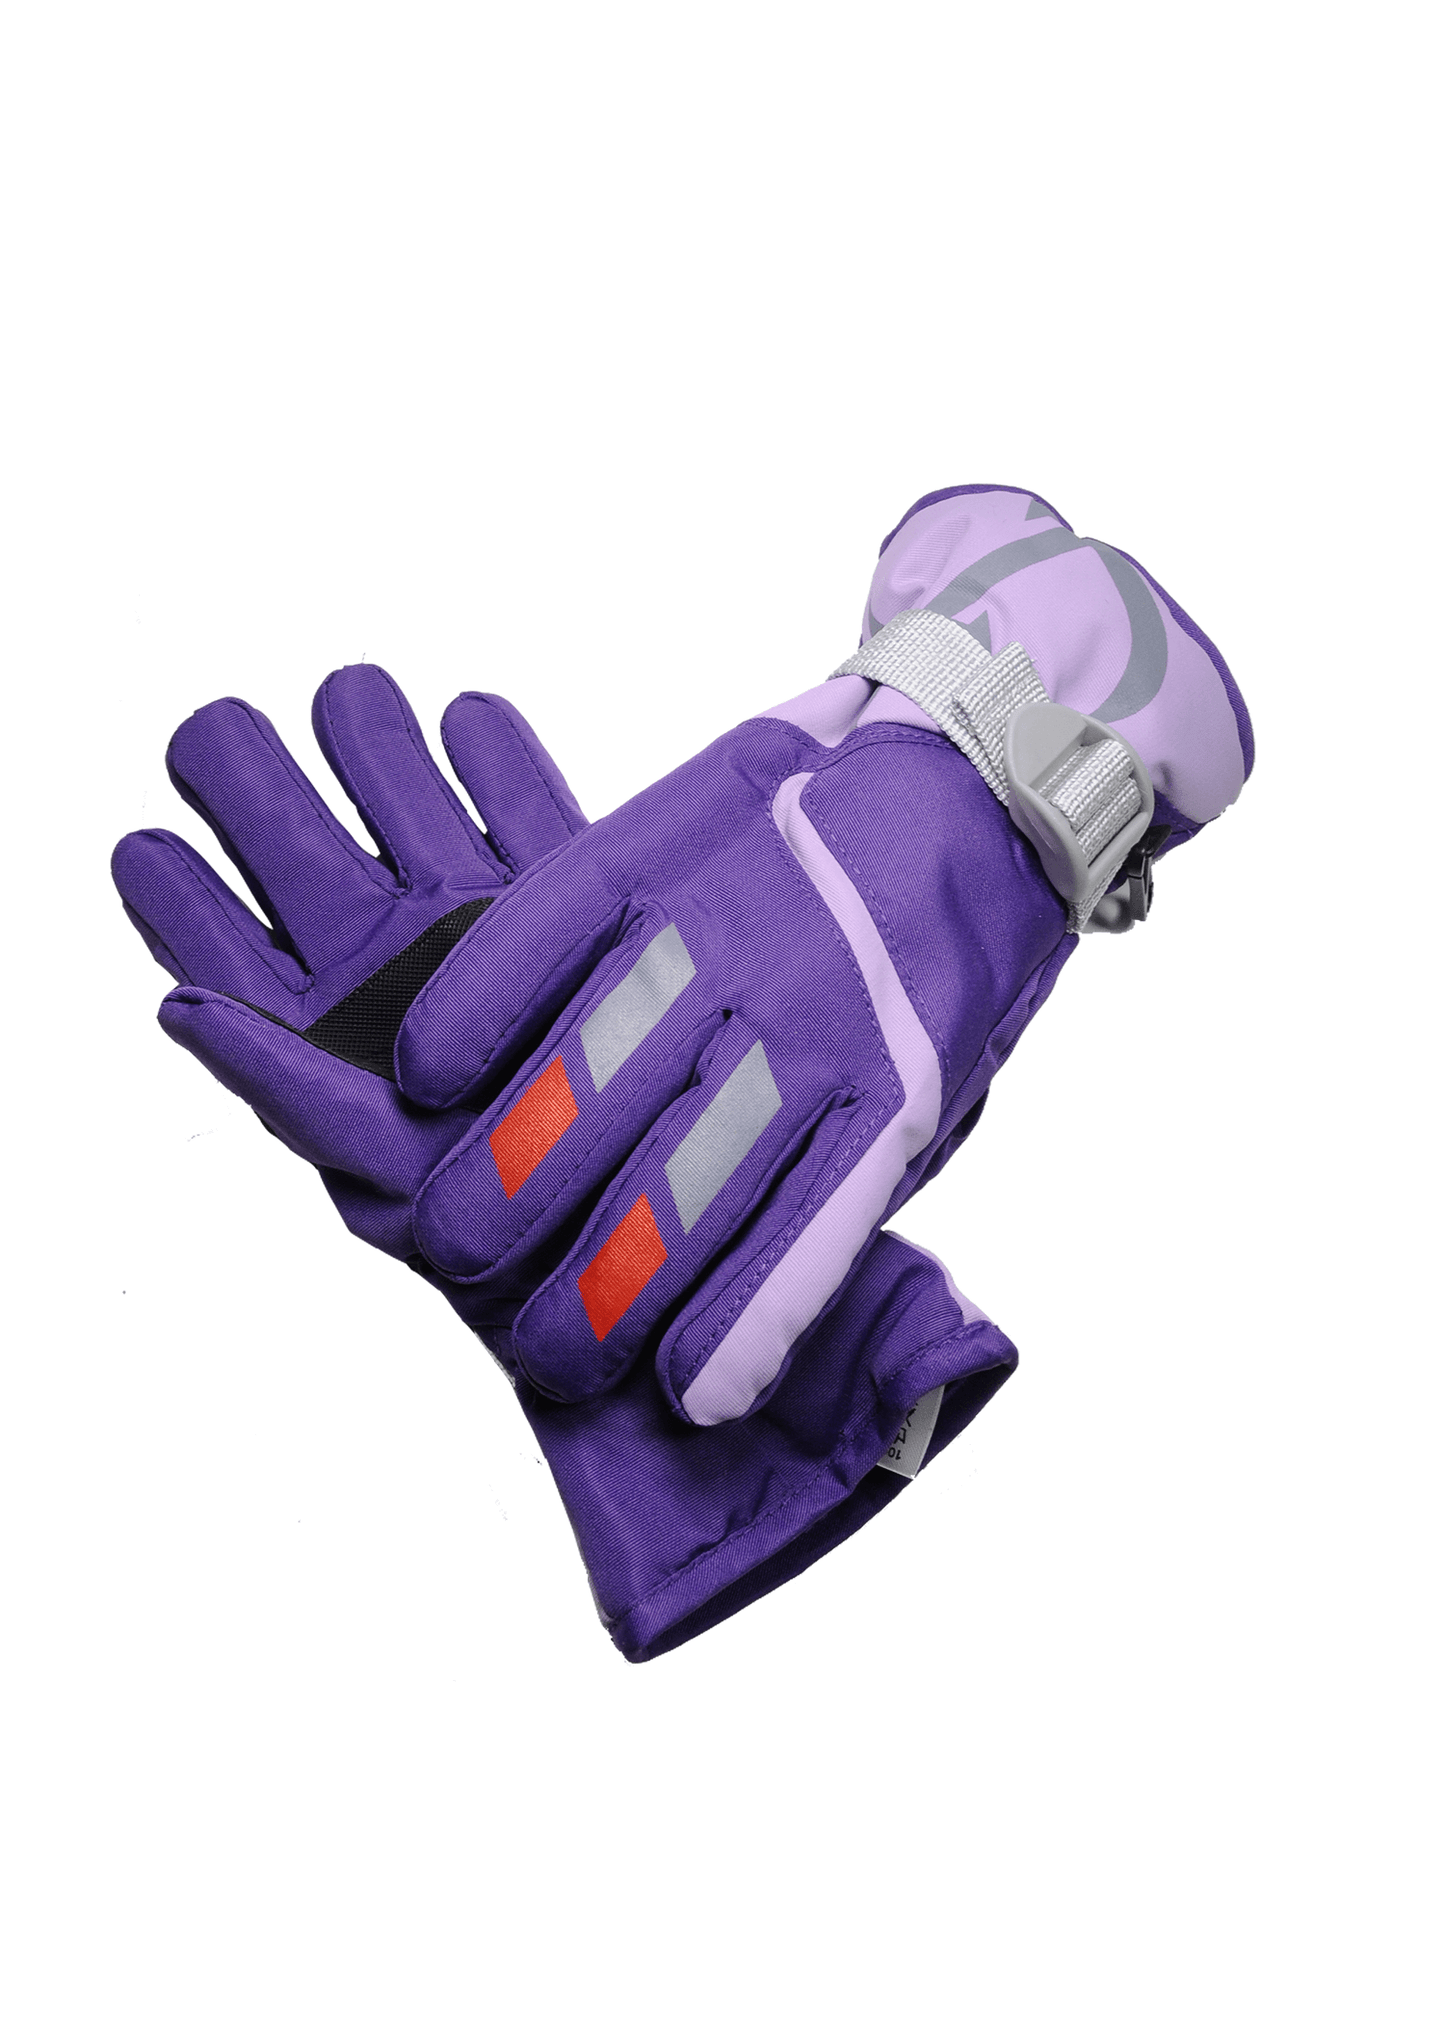 Youth Winter Ski Gloves